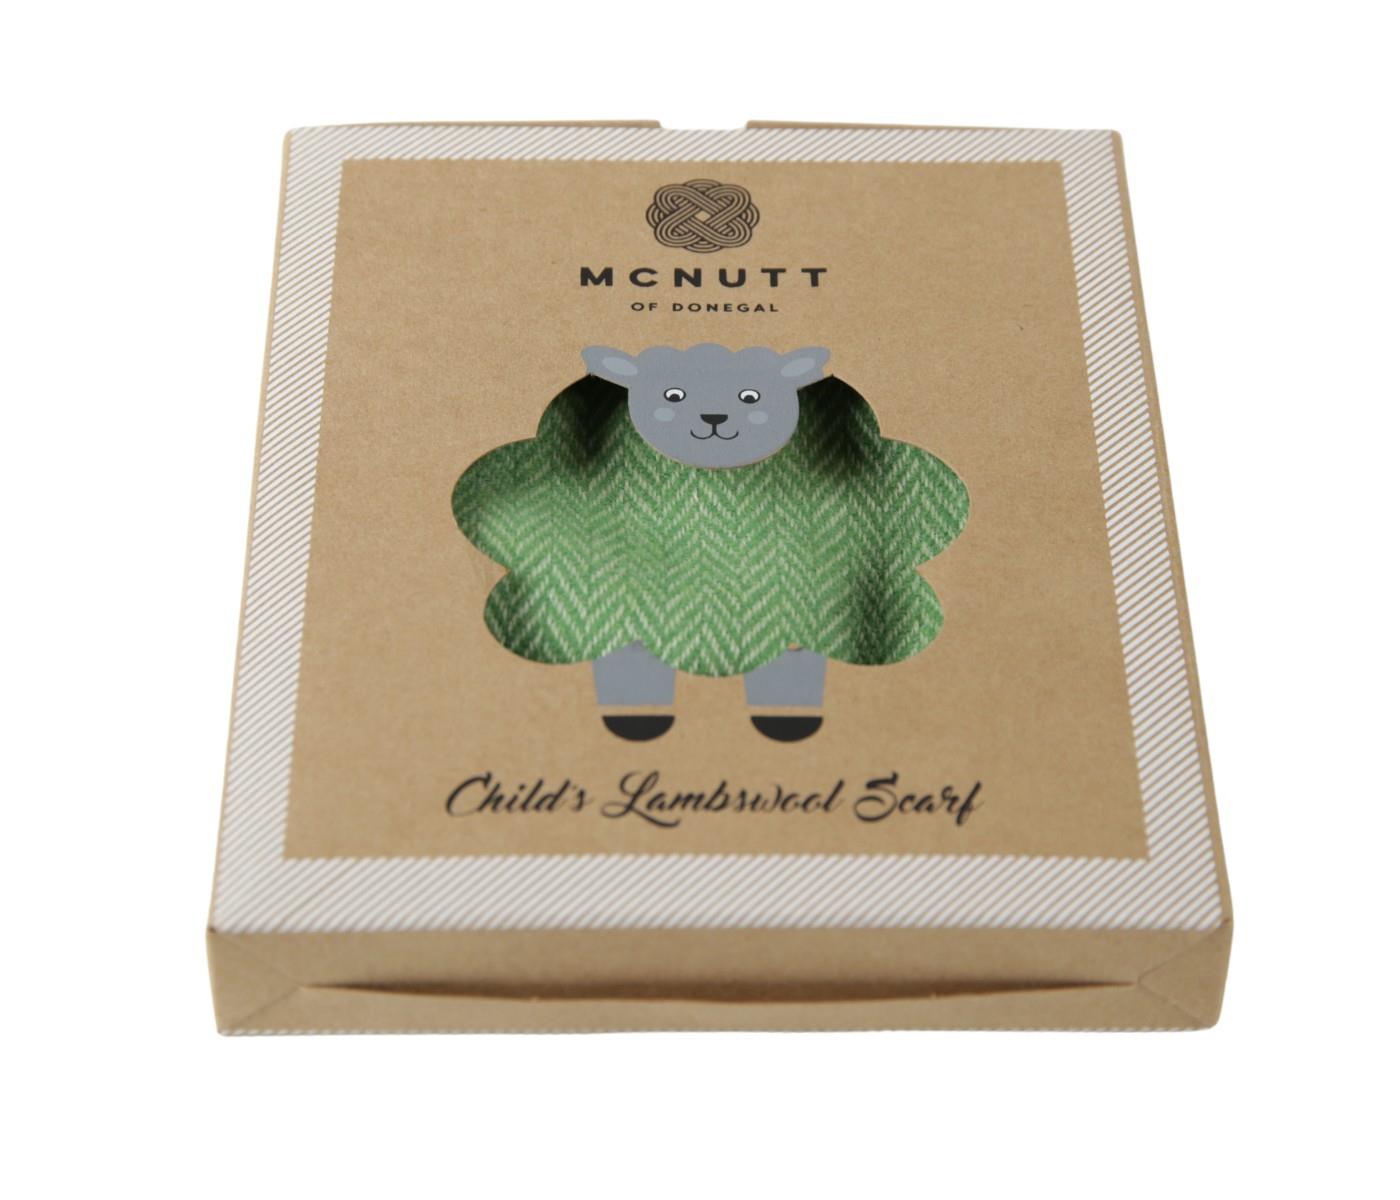 McNutt Kinderschal 100% Wolle (Merino) in grün